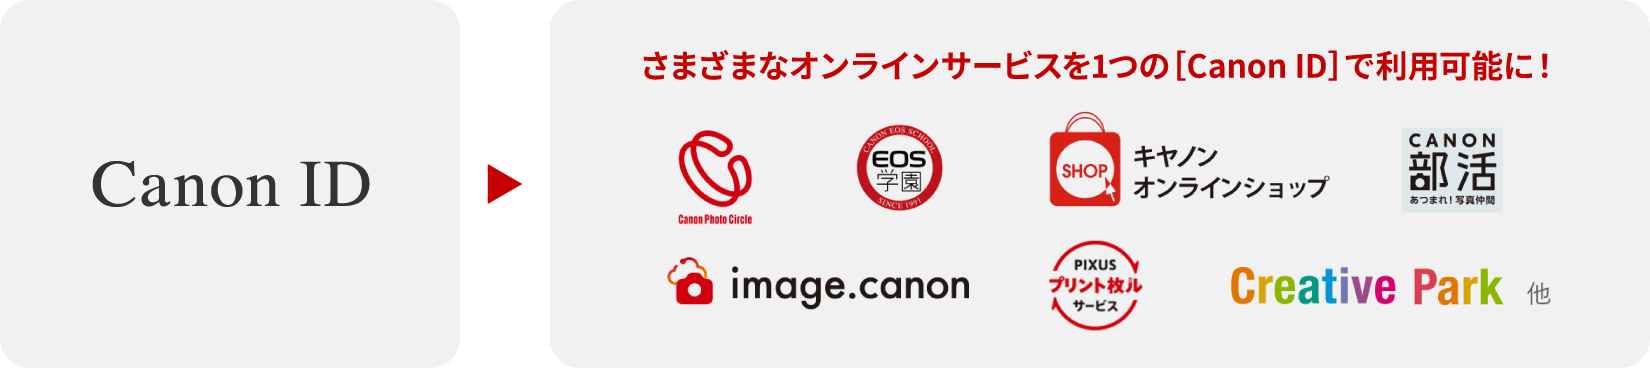 Canon ID さまざまなオンラインサービスを1つの［Canon ID］で利用可能に！CanonPhotoCircle／eos学園／キヤノンオンラインショップ／CANON部活／image.canon／PIXUSプリント枚ルサービス／CreativePark 他